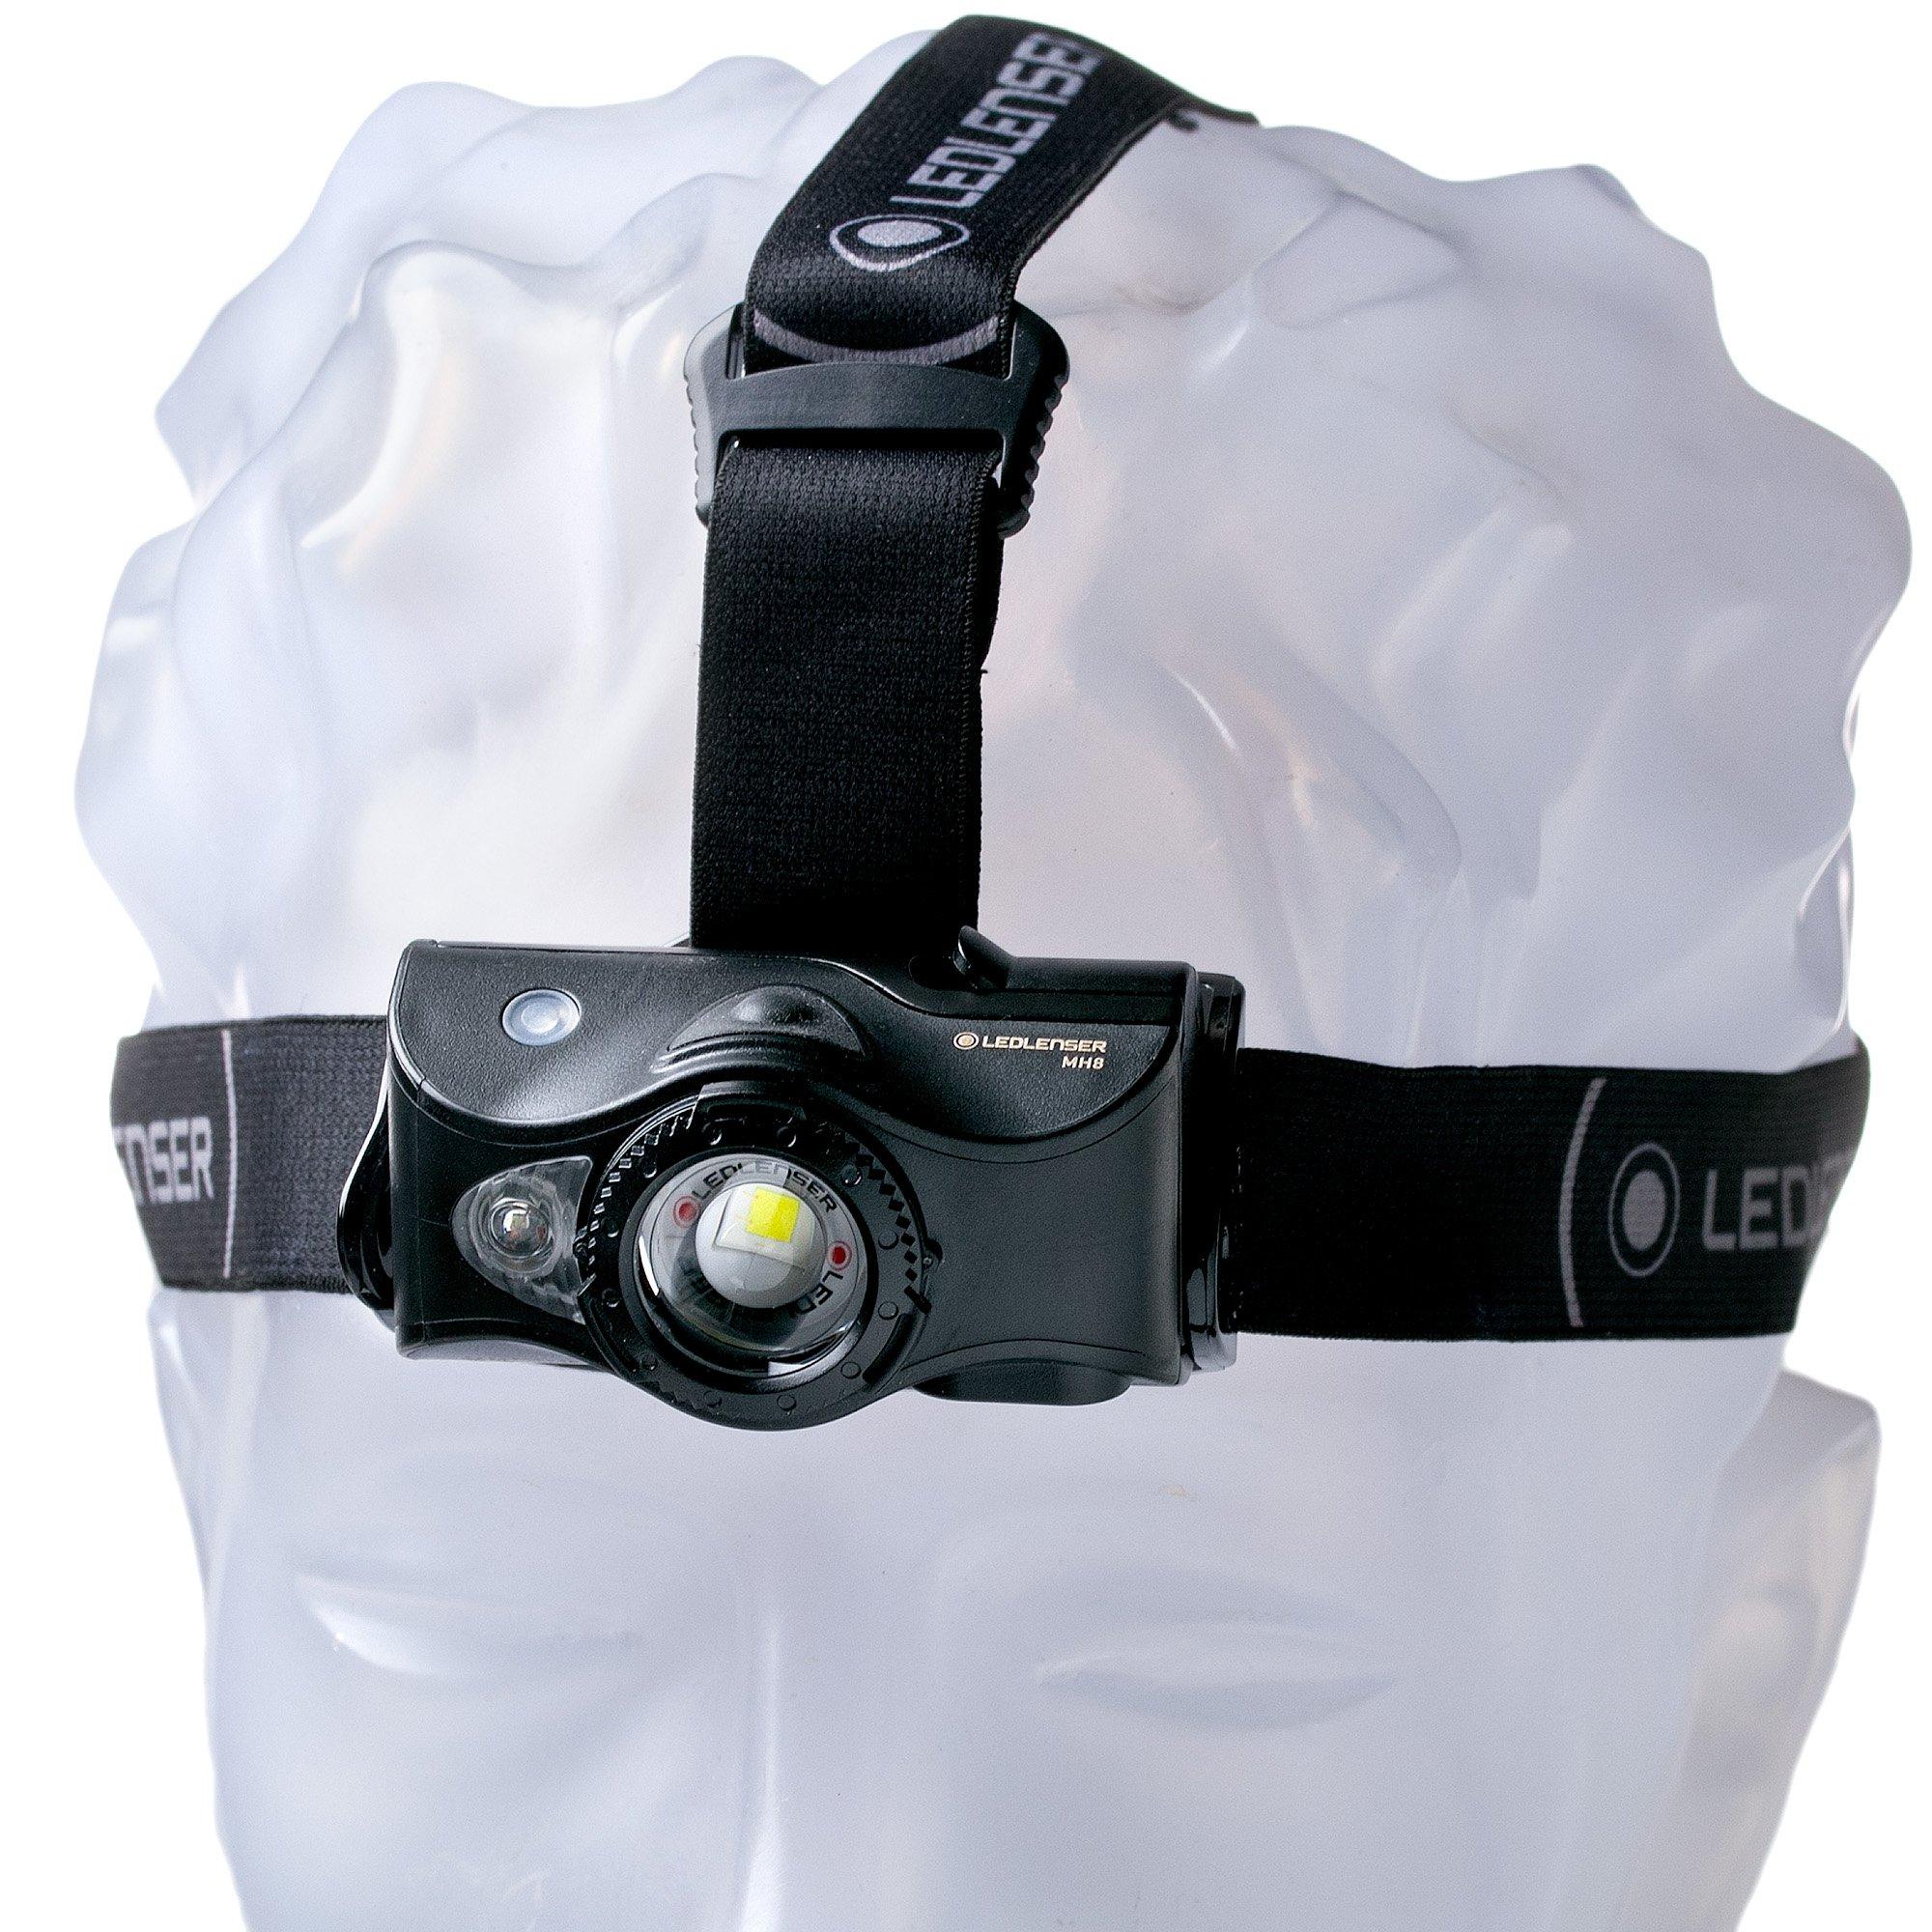 Ledlenser MH8 Lampe Frontale LED avec LED Mulitcolor supplémentaire,  Chasse, pêche, 600 lumens, Batterie Incluse